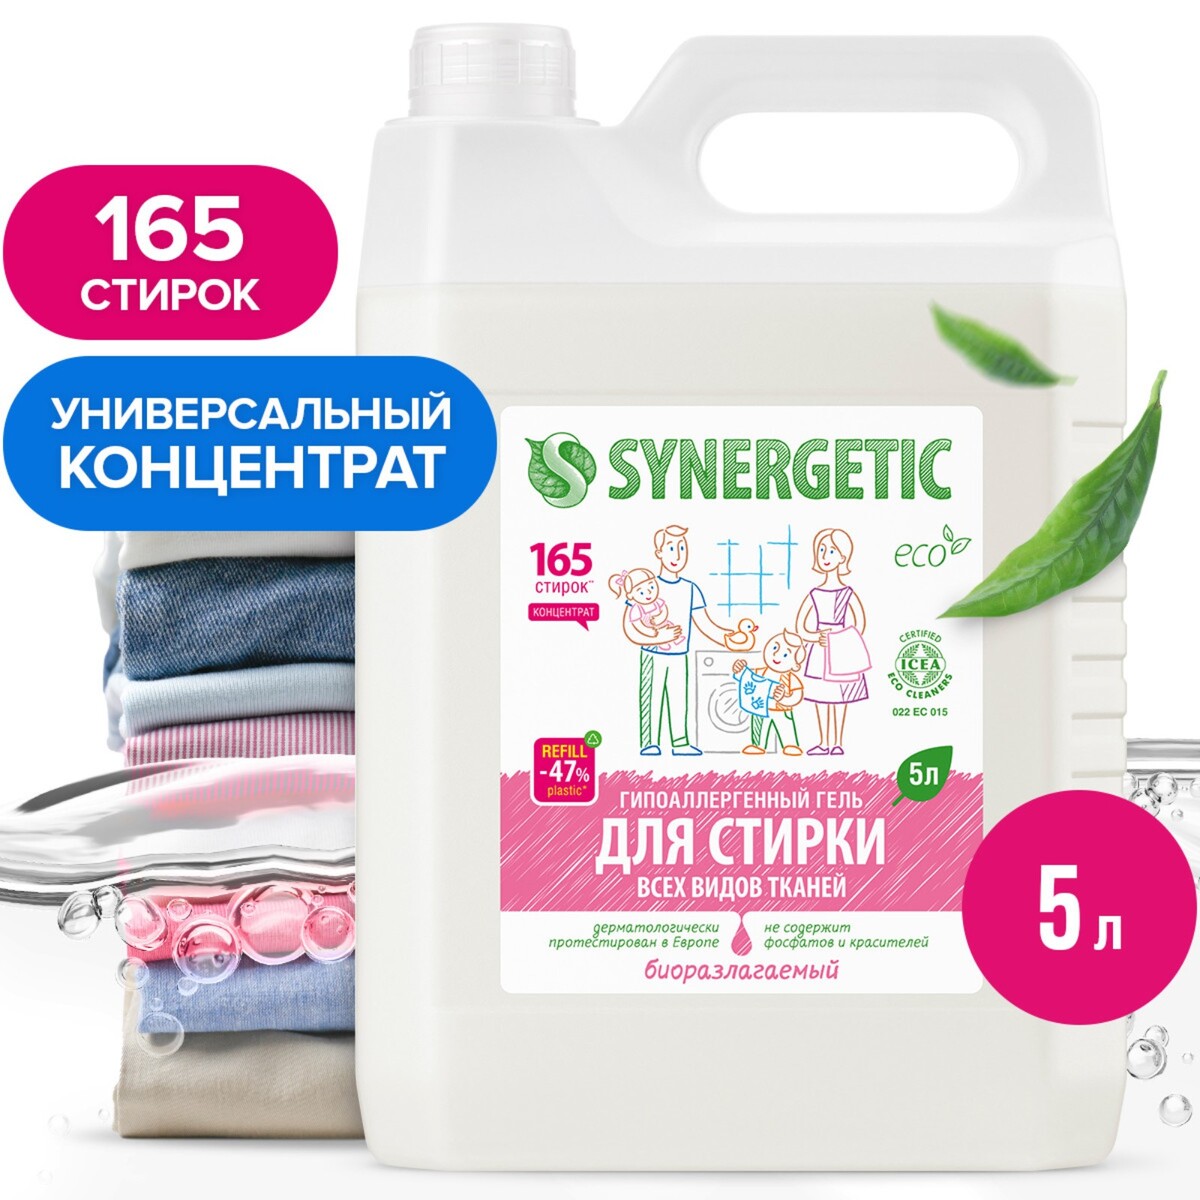 Жидкое средство для стирки synergetic, гель, универсальное, гипоаллергенное, 5 л гель для стирки деликатных тканей synergetic 1 5 л